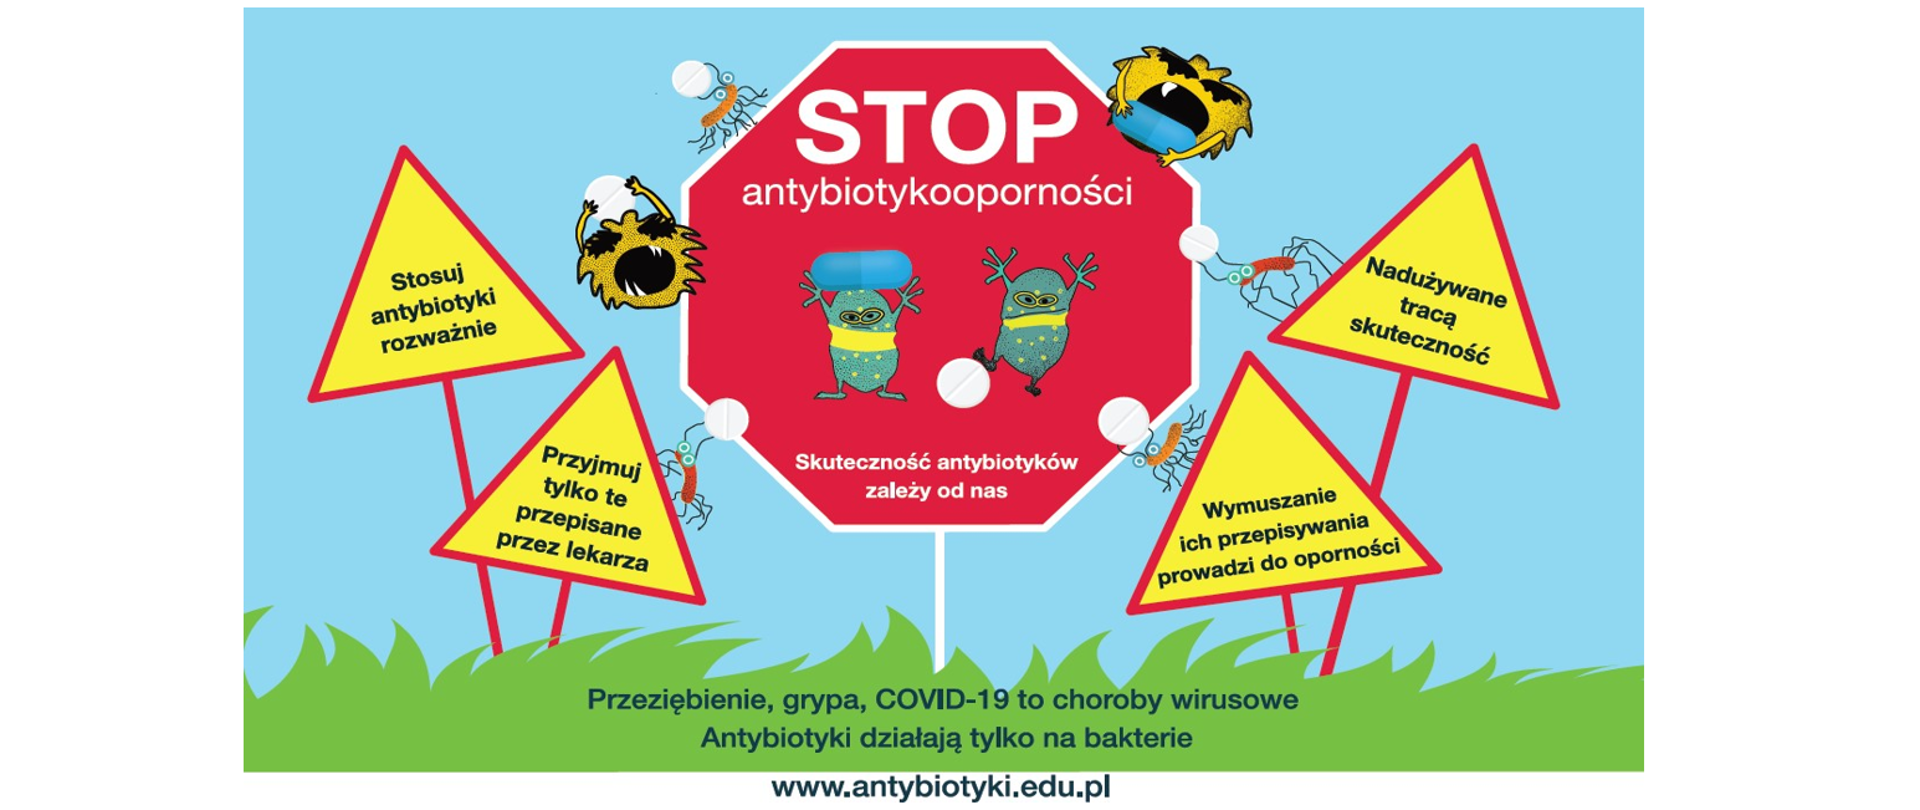 Kampnia: stop antybiotykooporności. Po środku znak drogowy STOP z napisem stop antybiotykooporności po środku graficzne dwa wirysy poniże napis Skuteczność antybiotyków zalezy od nas. 